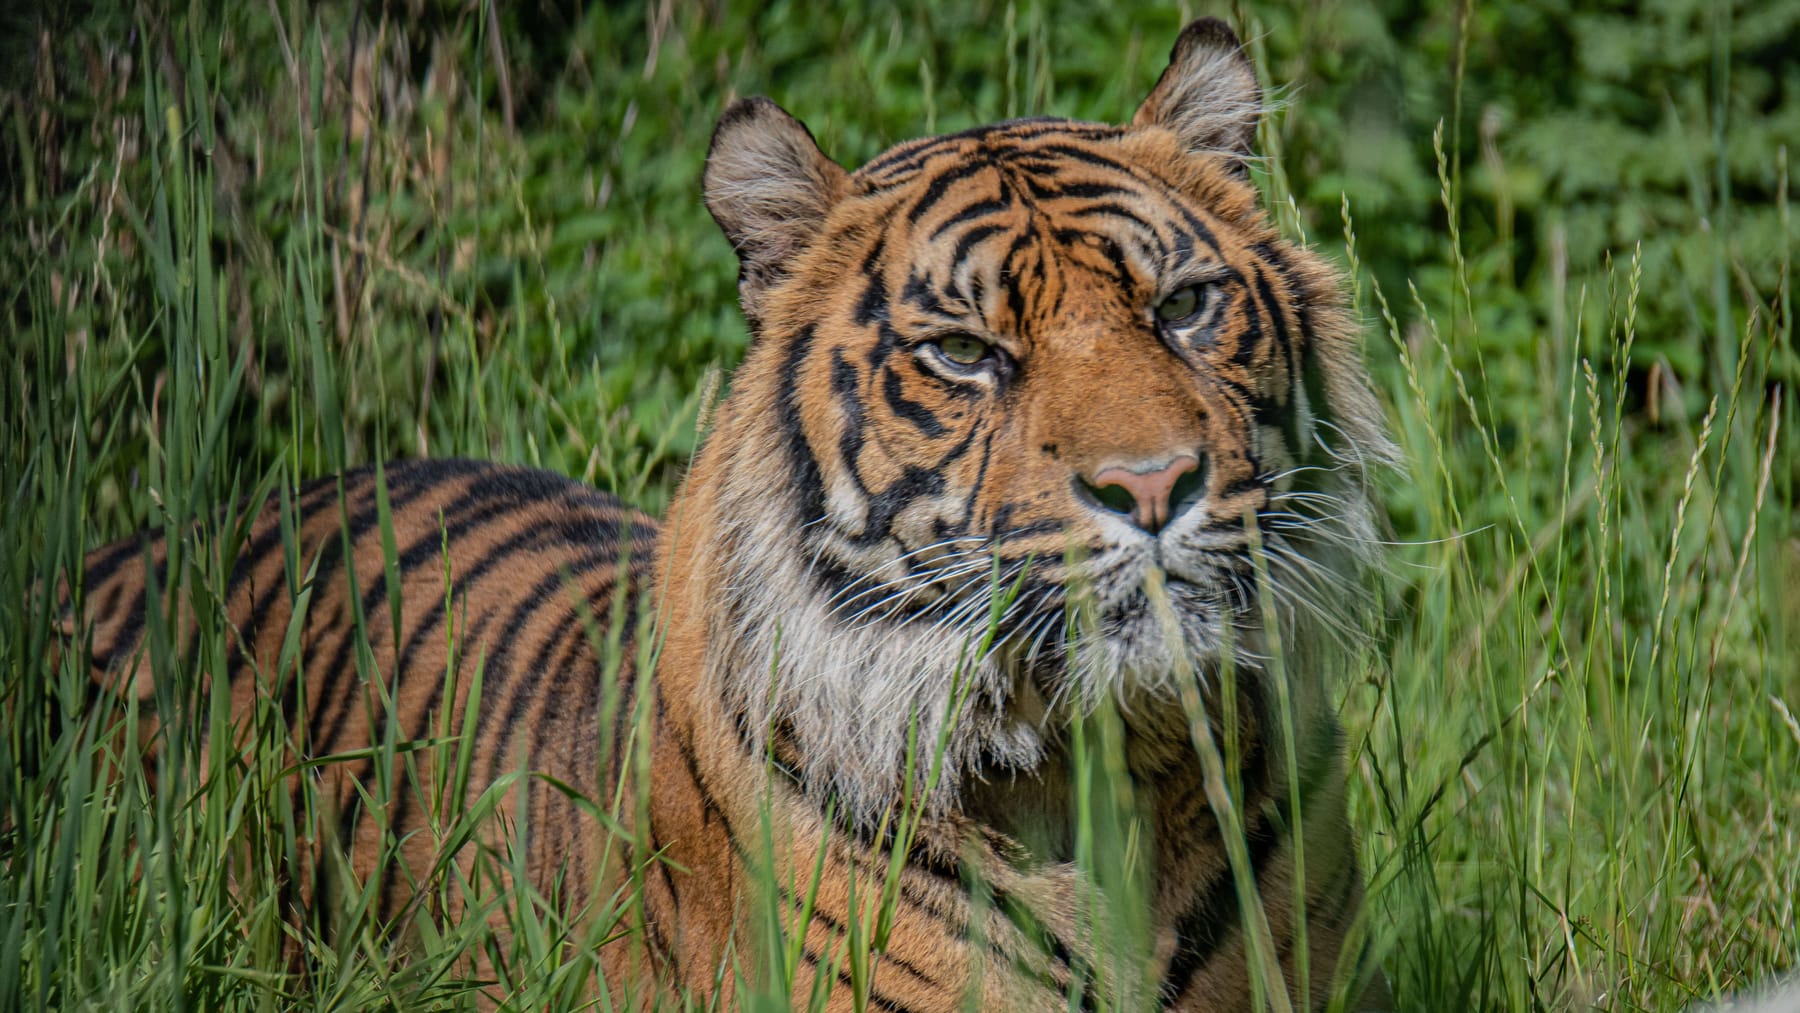 Serangan harimau di Indonesia: satu orang selamat dengan luka di kepala